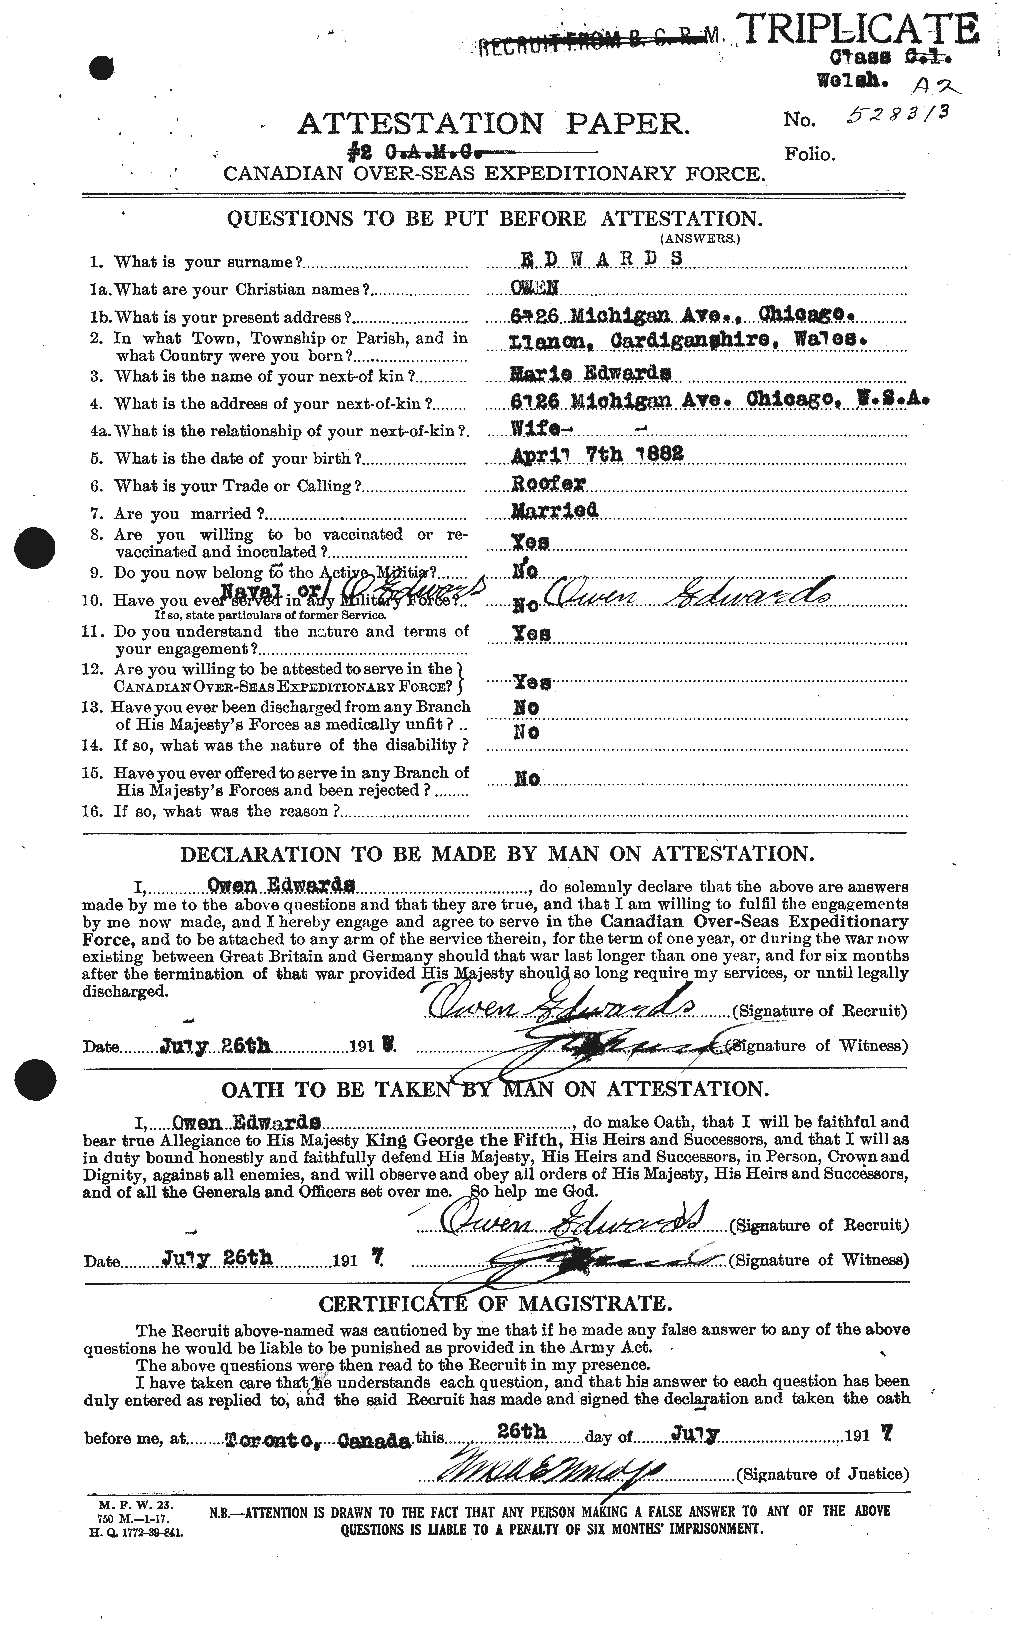 Dossiers du Personnel de la Première Guerre mondiale - CEC 310228a